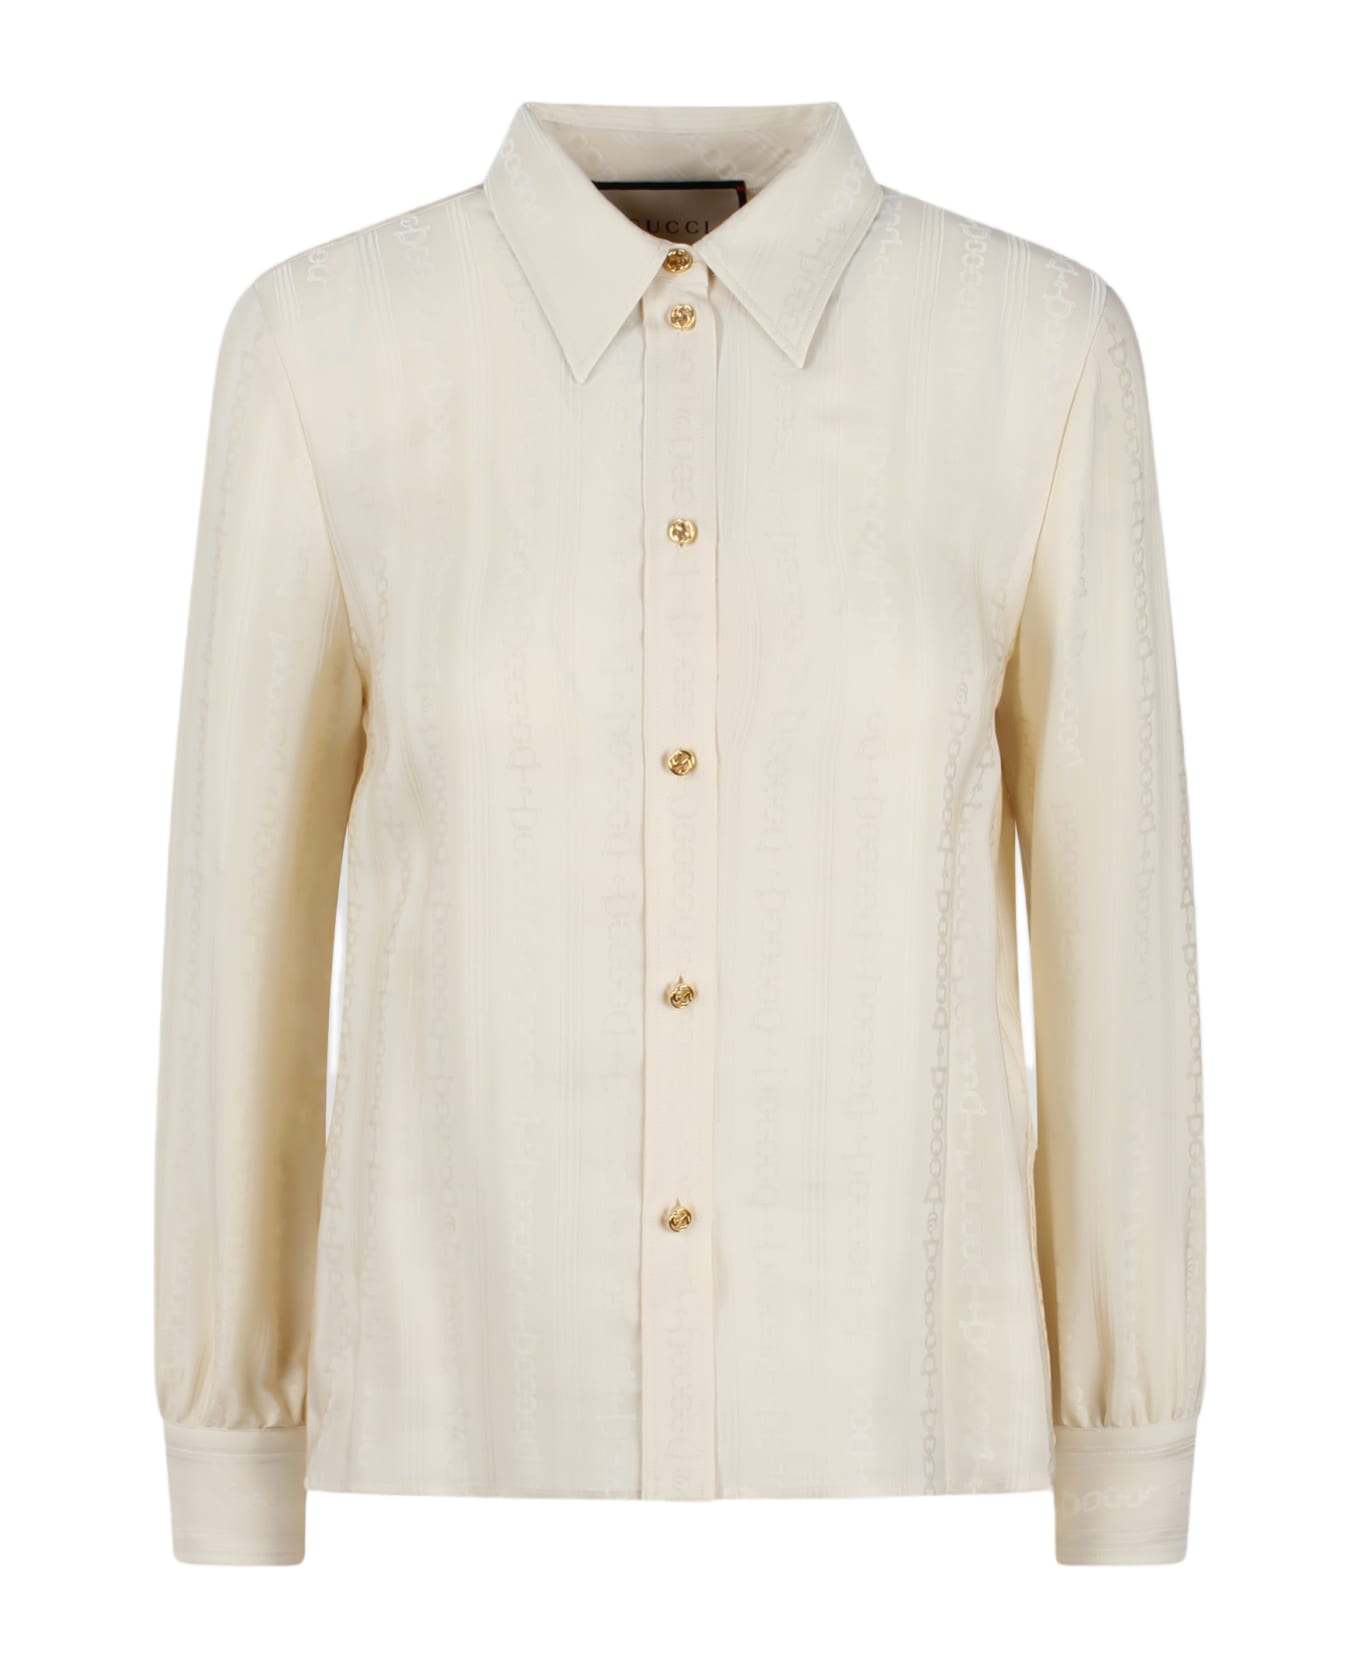 Gucci Shirt - White シャツ